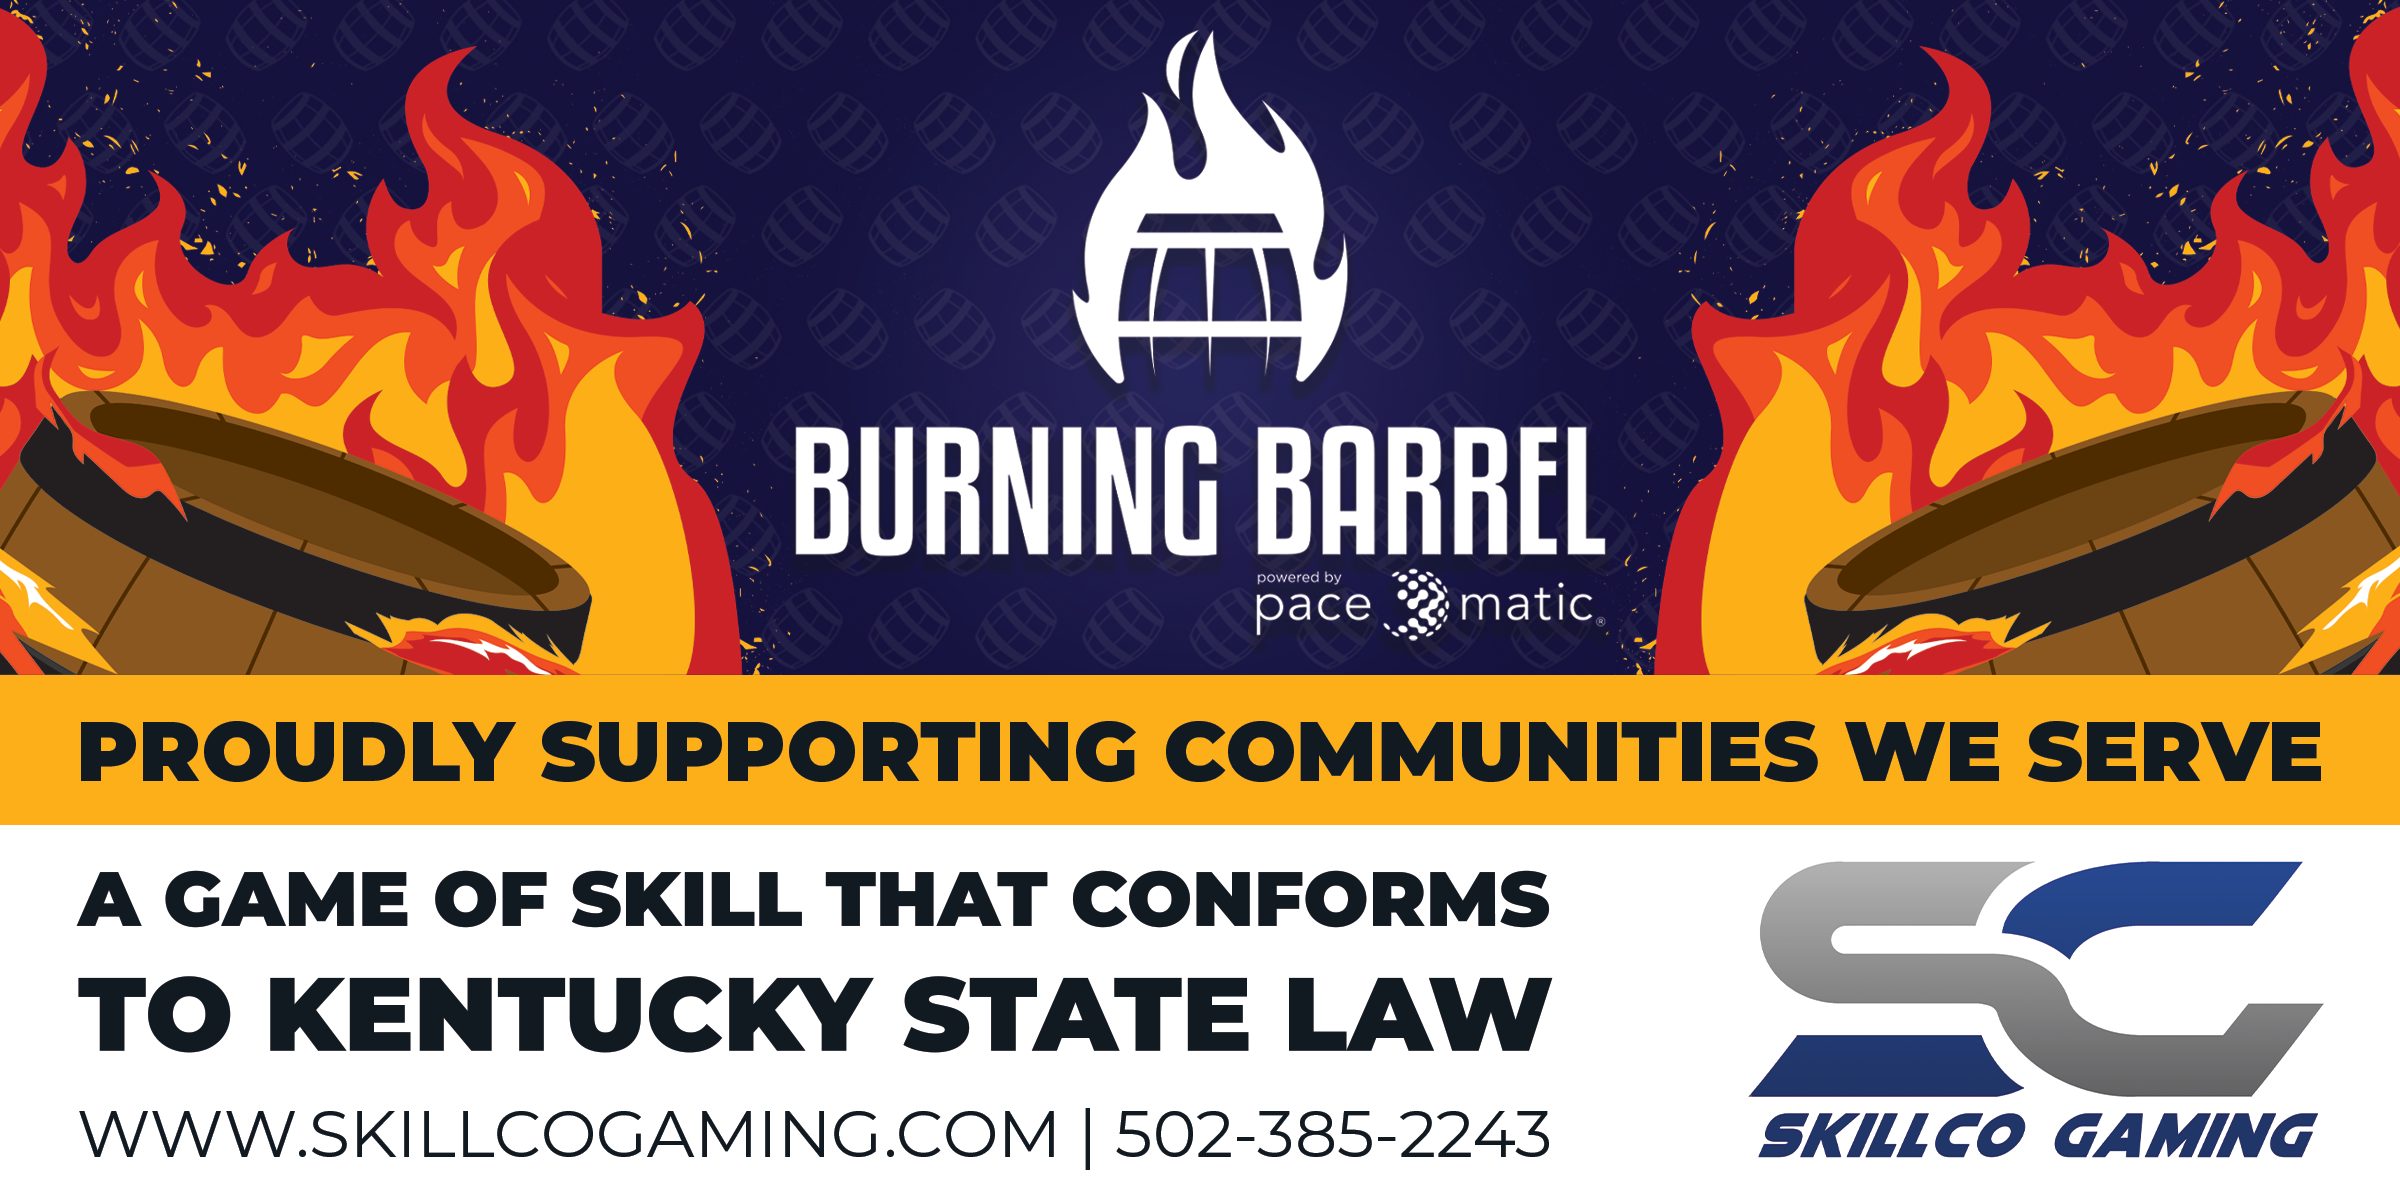 Burning Barrel Ad_8W x 4H (003)